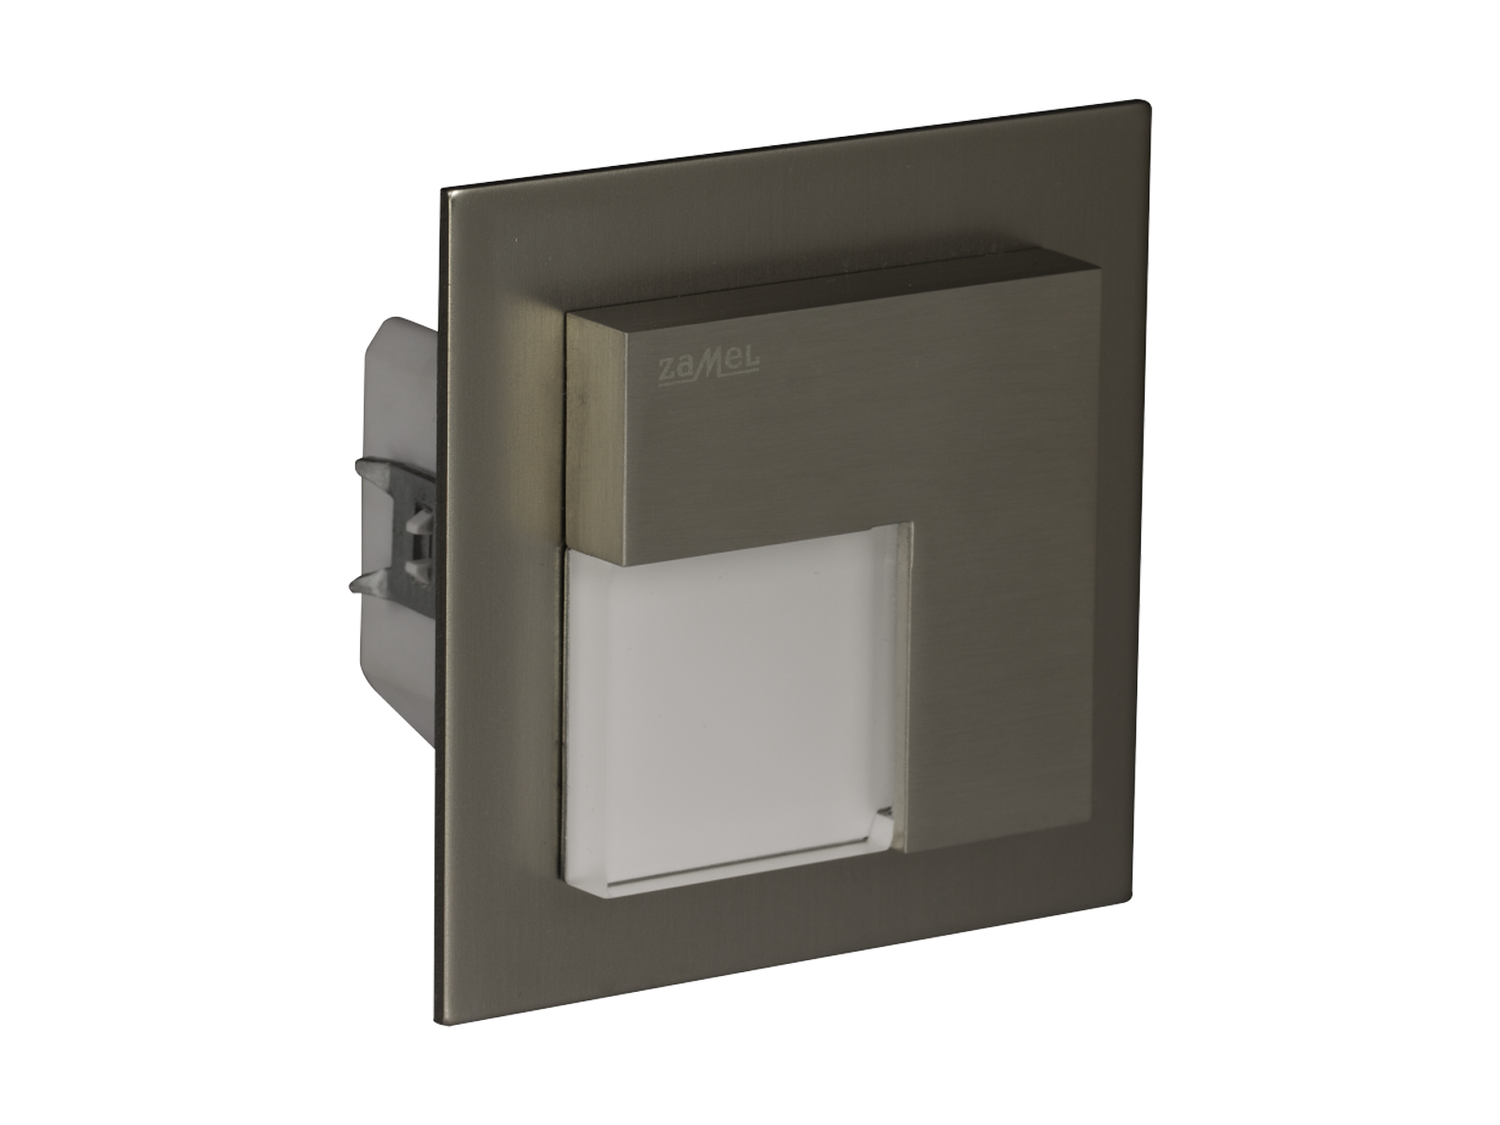 Svítidlo LED do krabice LEDIX TIMO 230V AC, kartáčovaná ocel, studená bílá, IP20